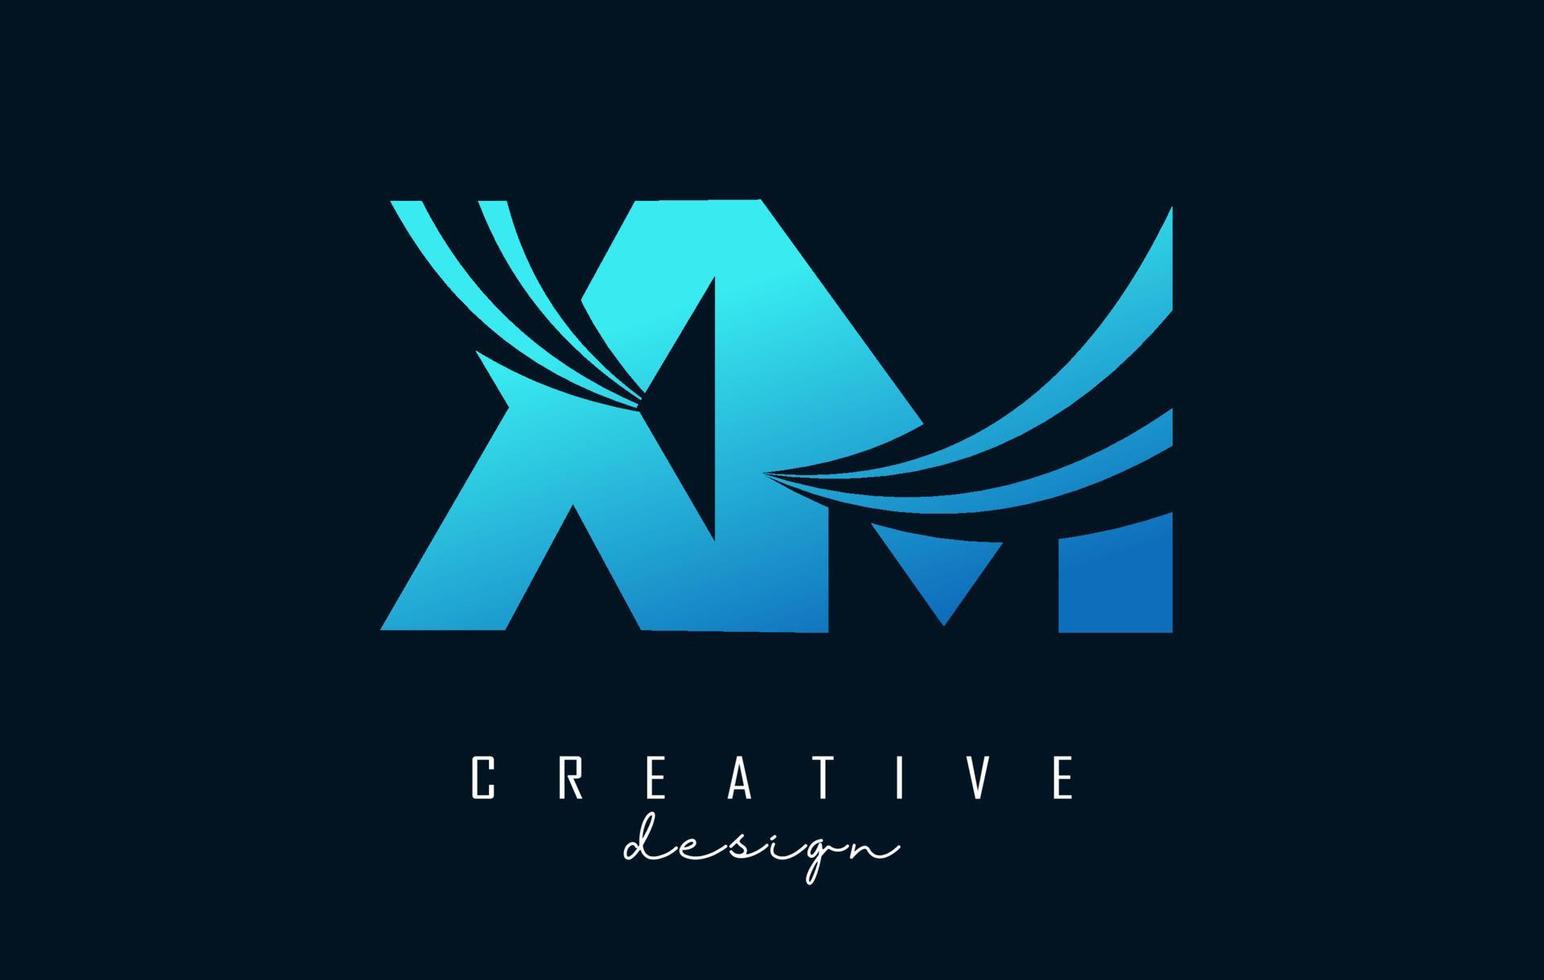 logotipo criativo de letras azuis xm xm com linhas principais e design de conceito de estrada. letras com desenho geométrico. vetor